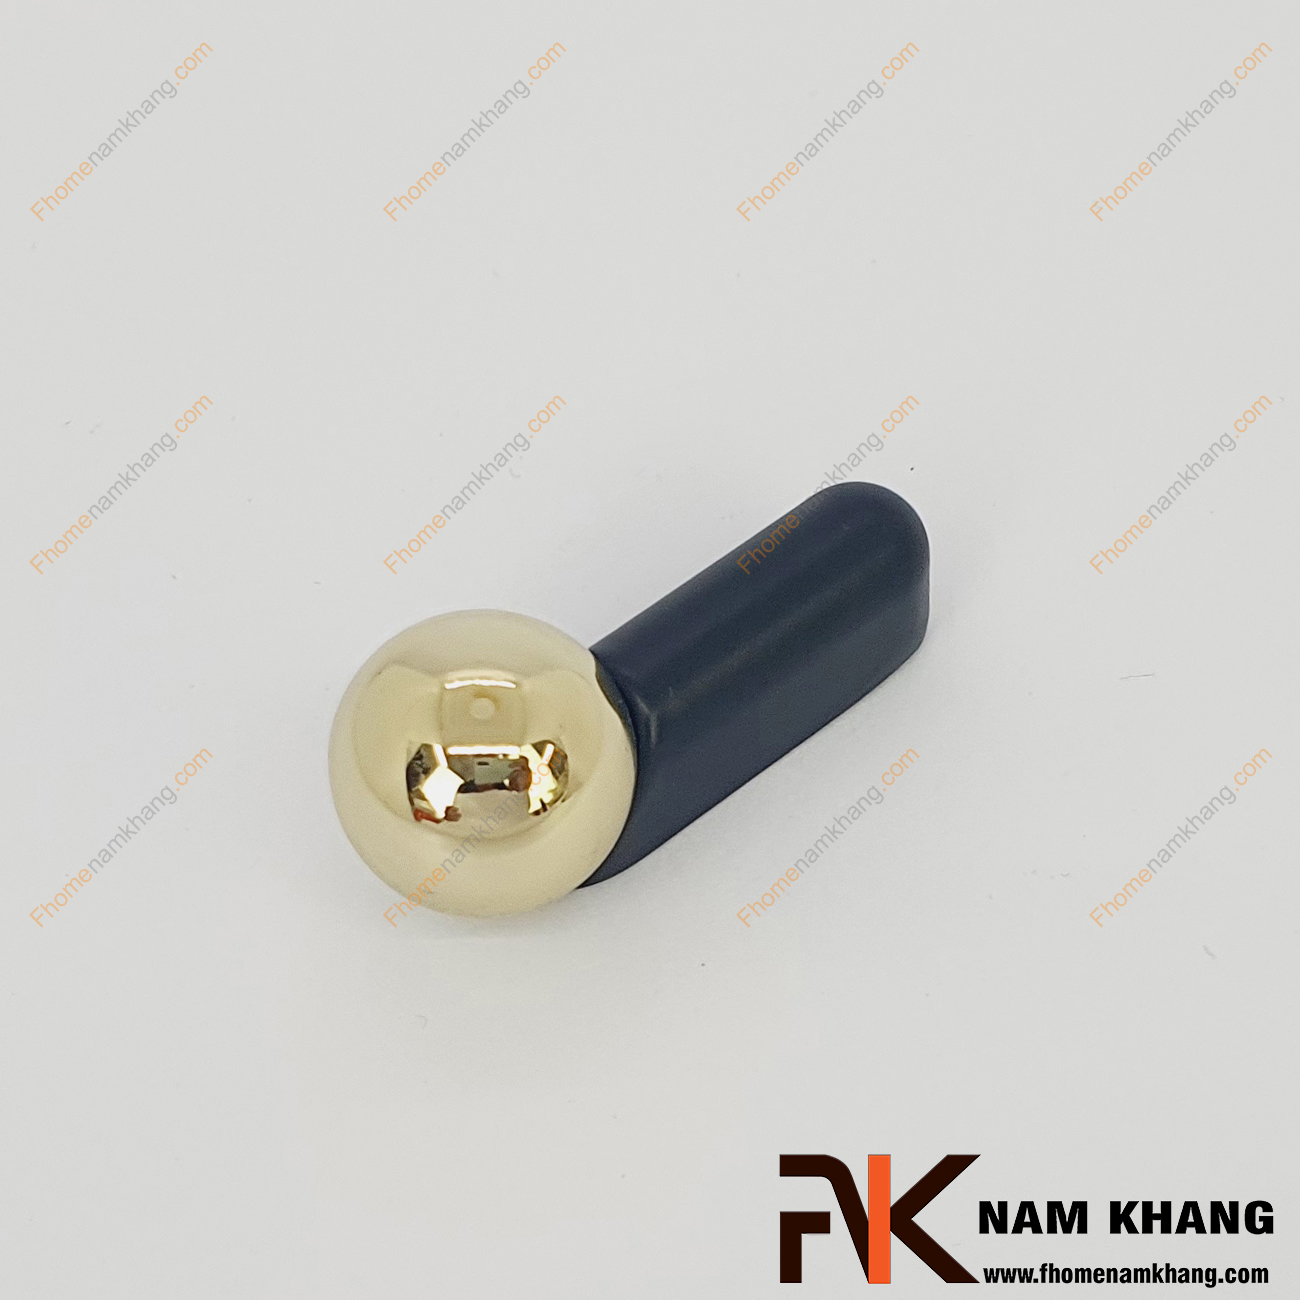 Tay nắm tủ dạng thanh tròn đen phối bi vàng NK393-DV- sản phẩm tay nắm tủ dạng lắp ghép từ 2 phần thanh tròn và viên bi cầu độc đáo